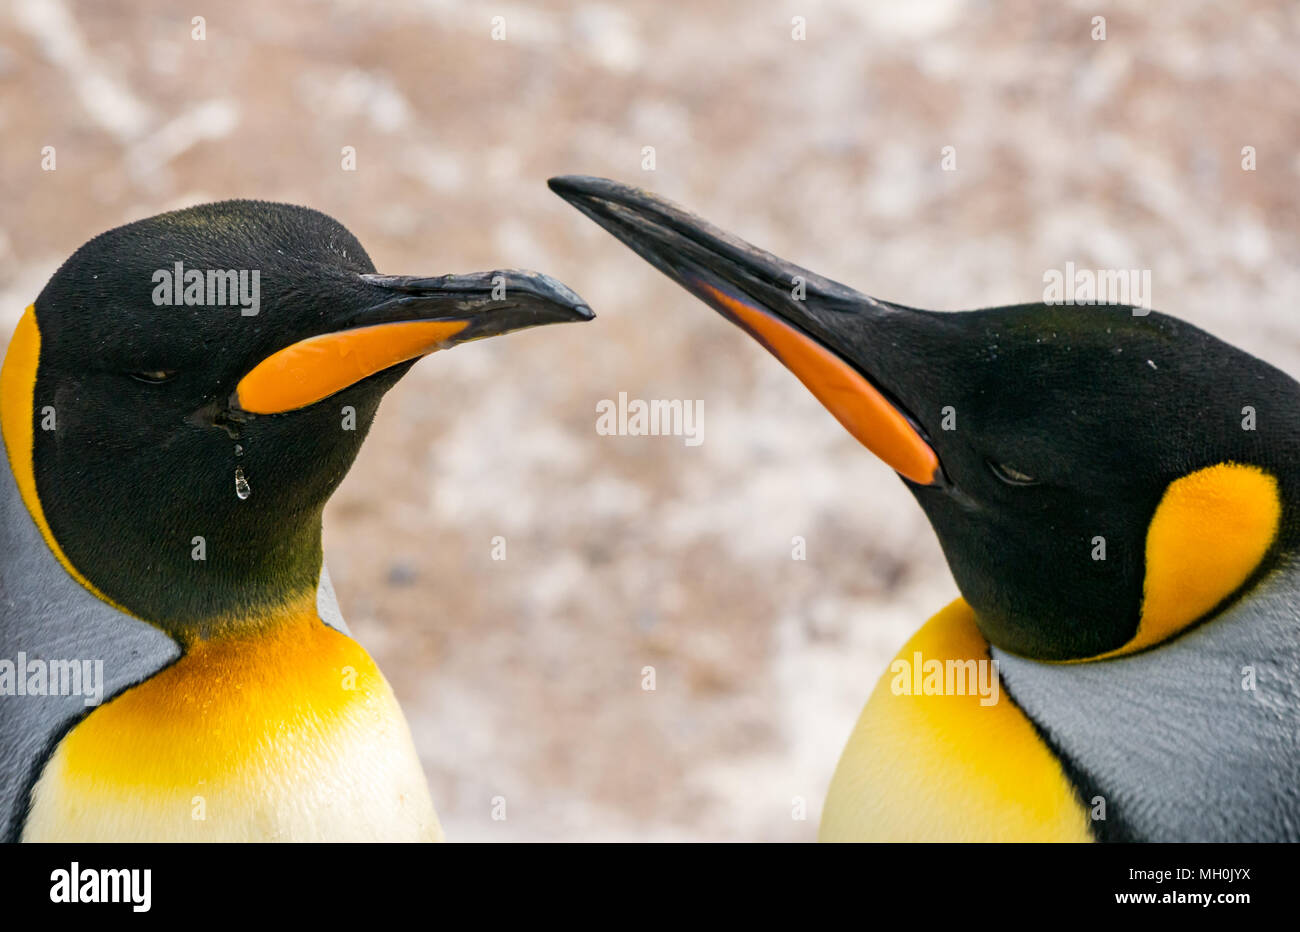 Pinguini imperatore, Atenoditi forti, pinguini imperatore in uno zoo, Regno Unito Foto Stock